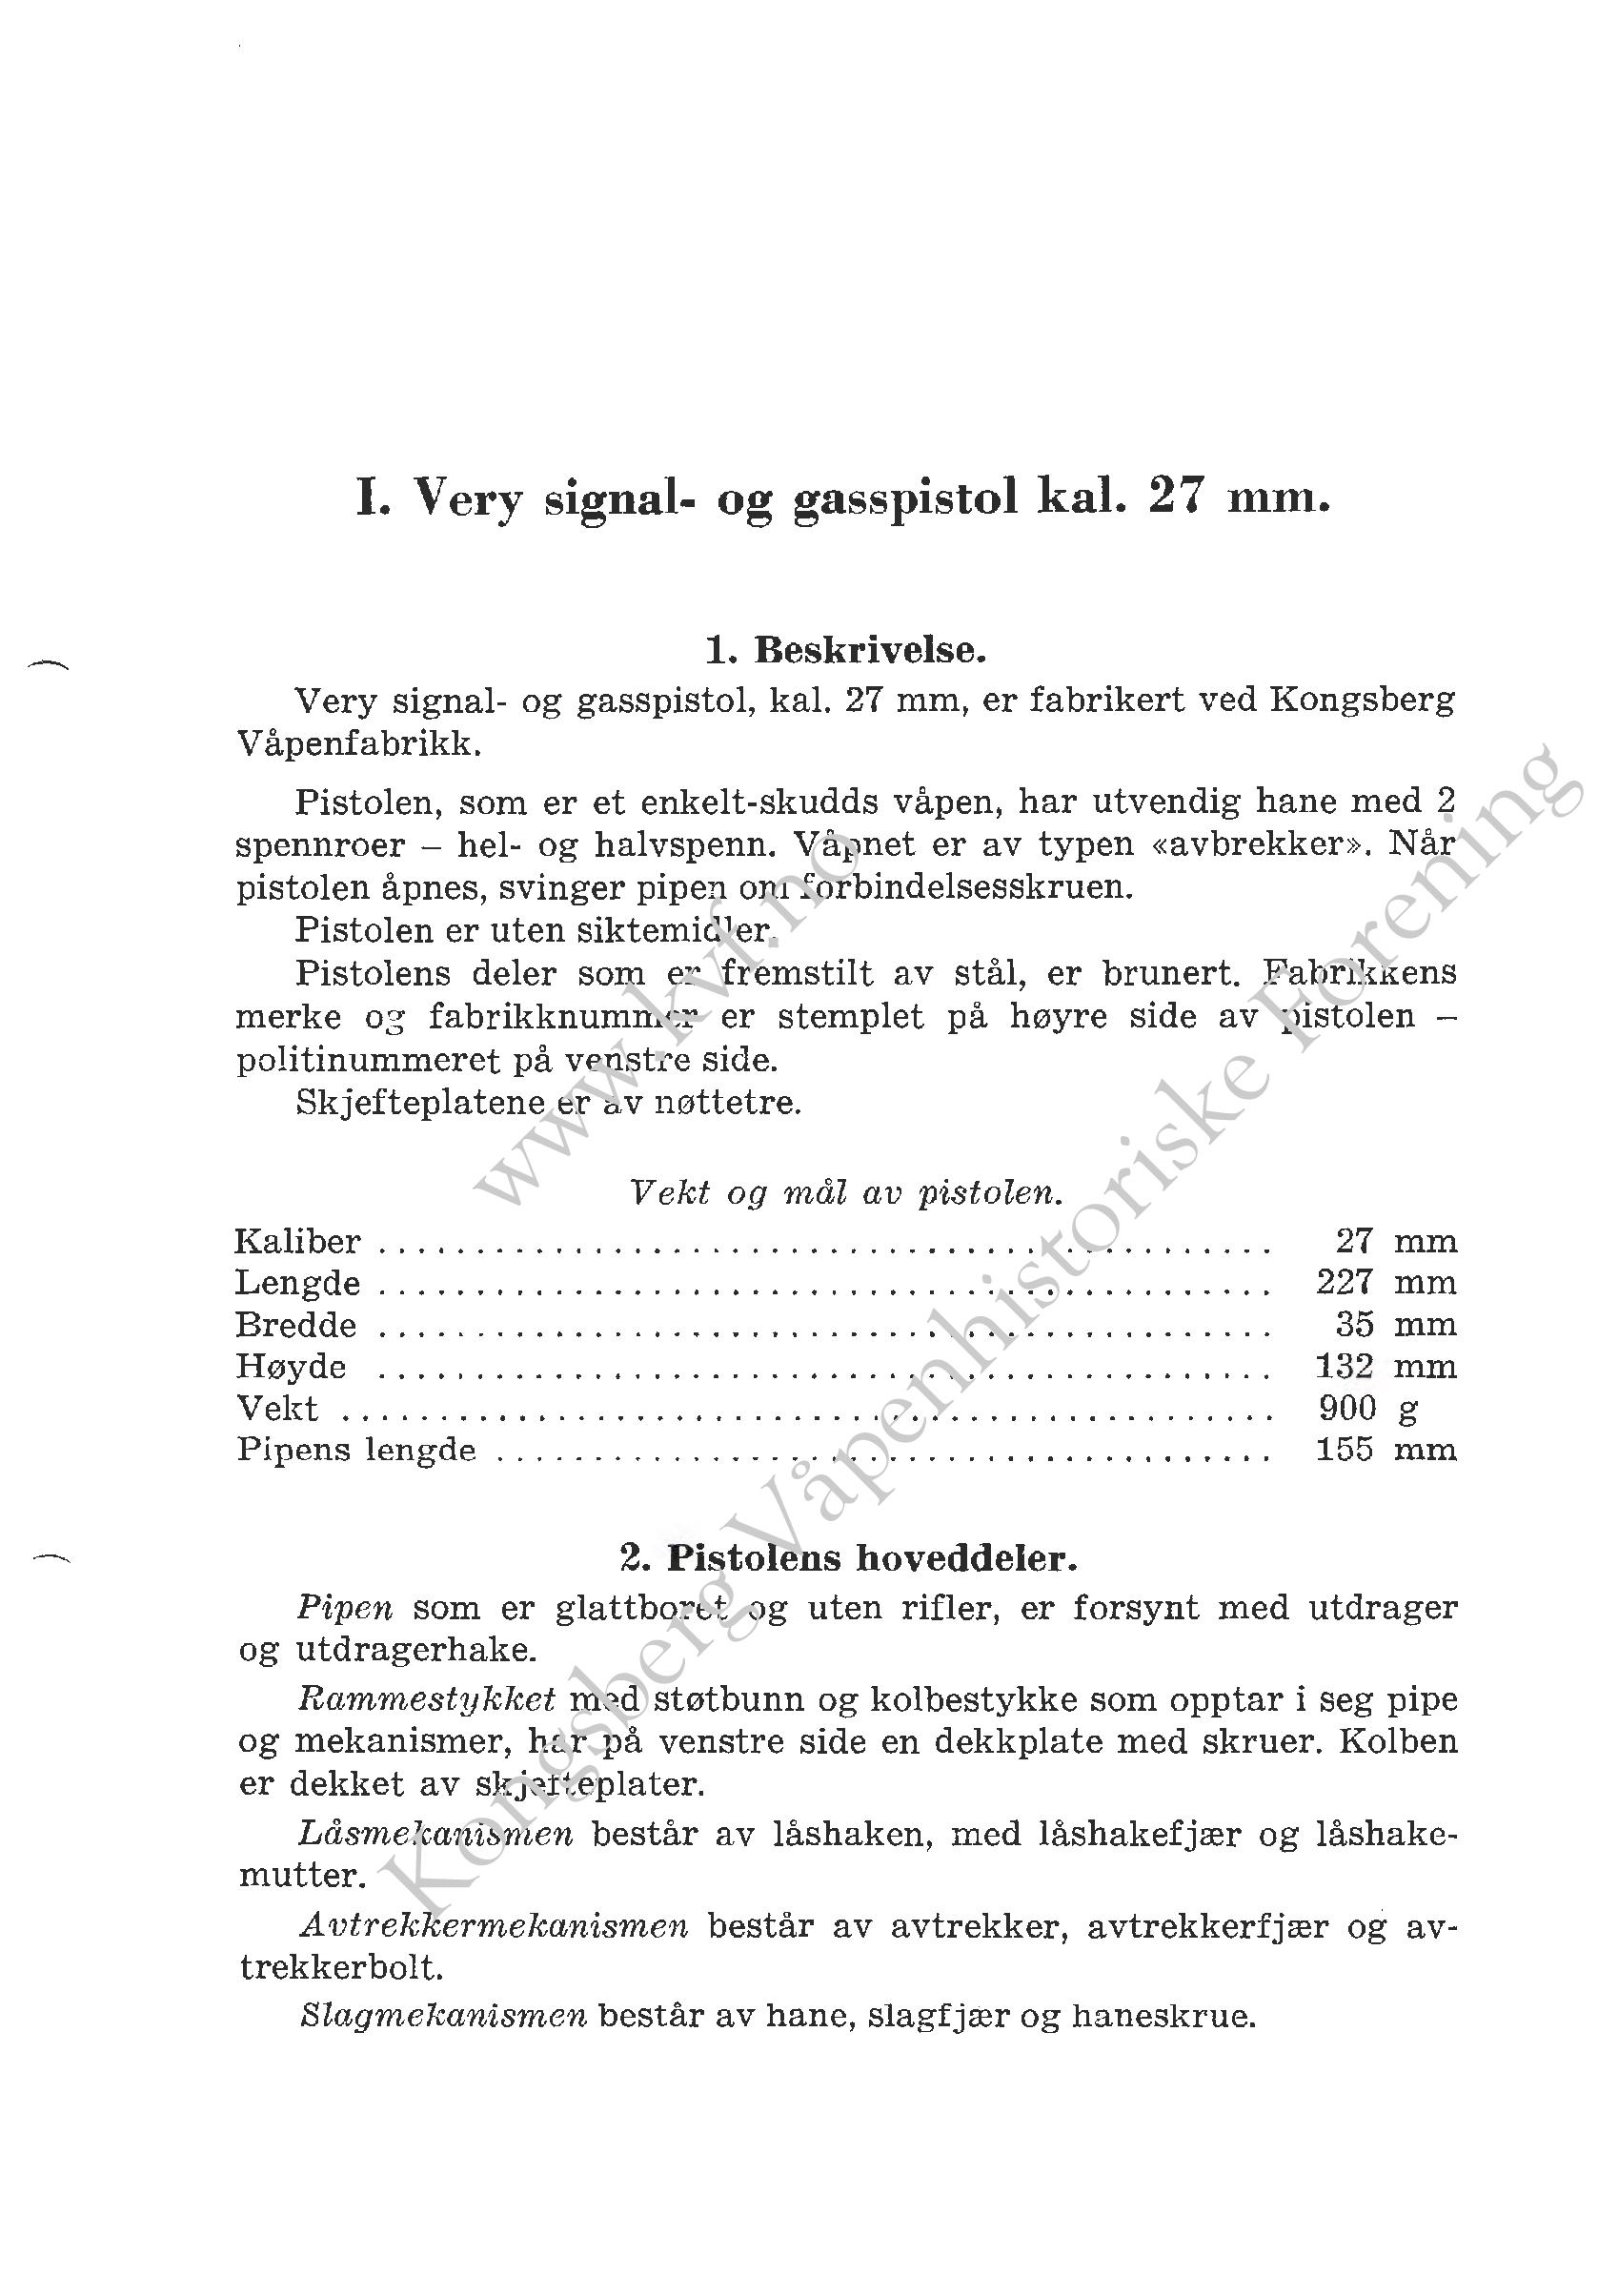 ./doc/reglement/Gasspistol/Beskrivelse-Signal-Gasspistol-1966-page-006.jpg